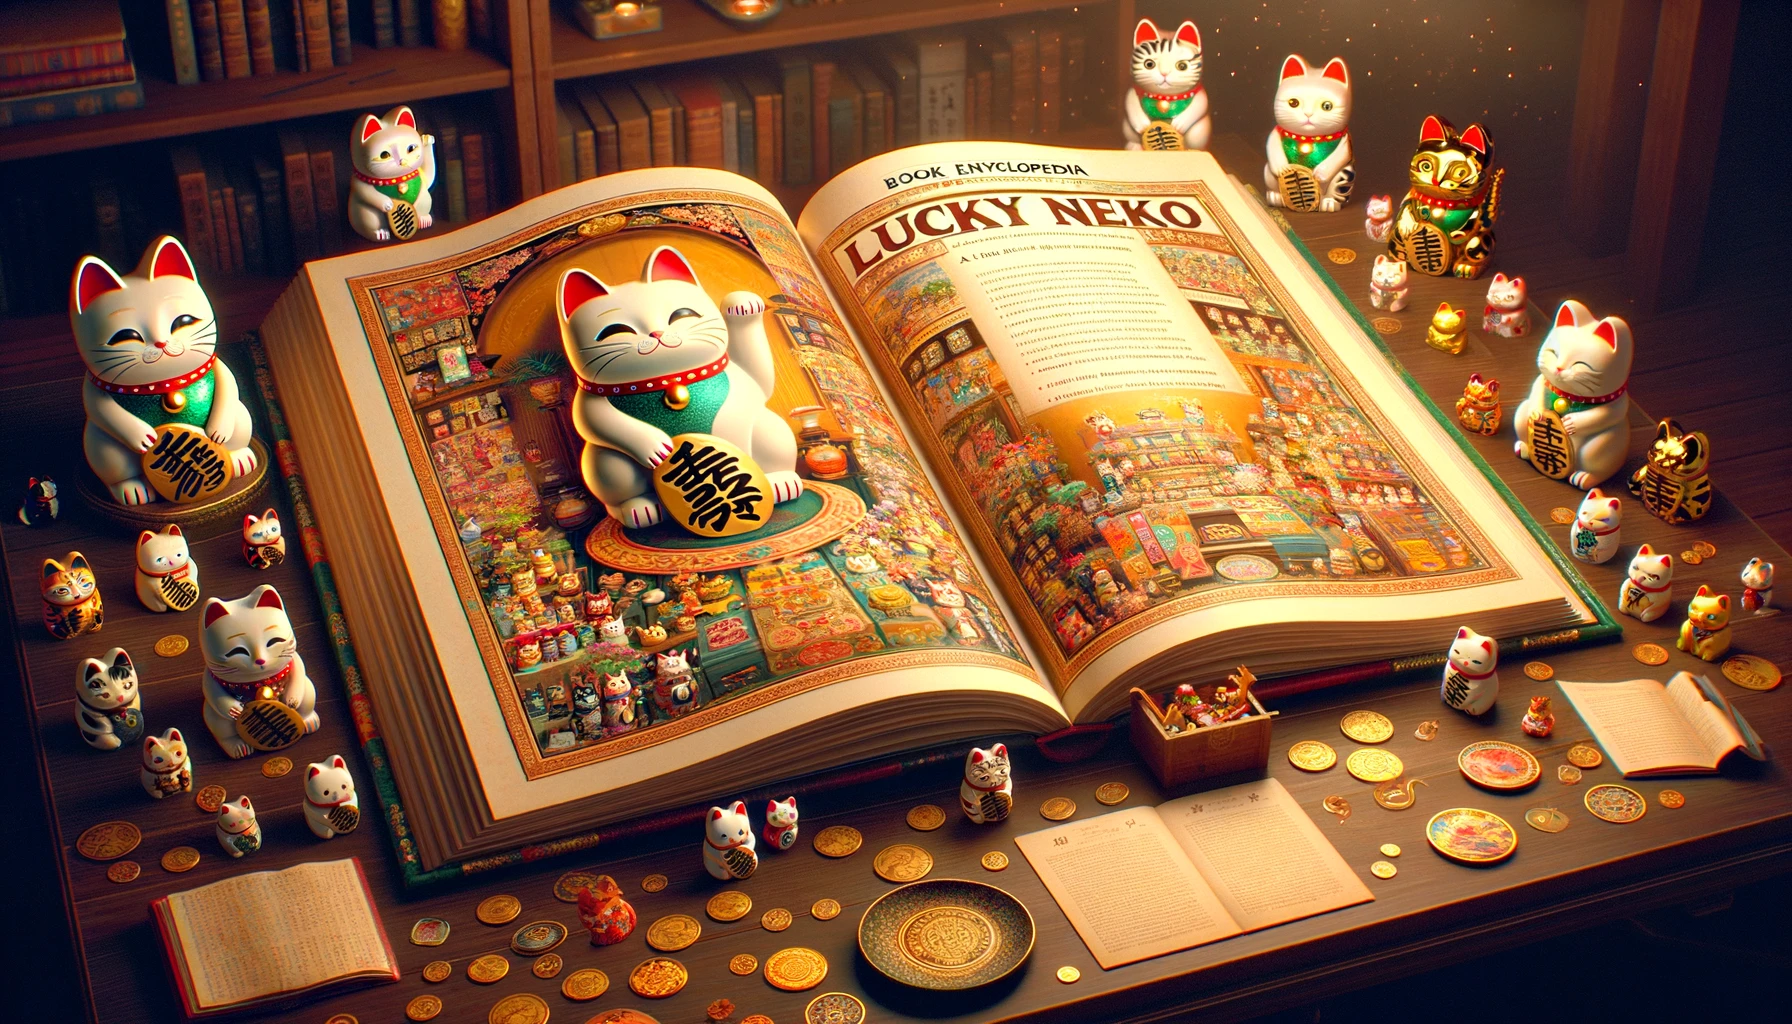 Traços de Felicidade: A Enciclopédia Mágica de Lucky Neko